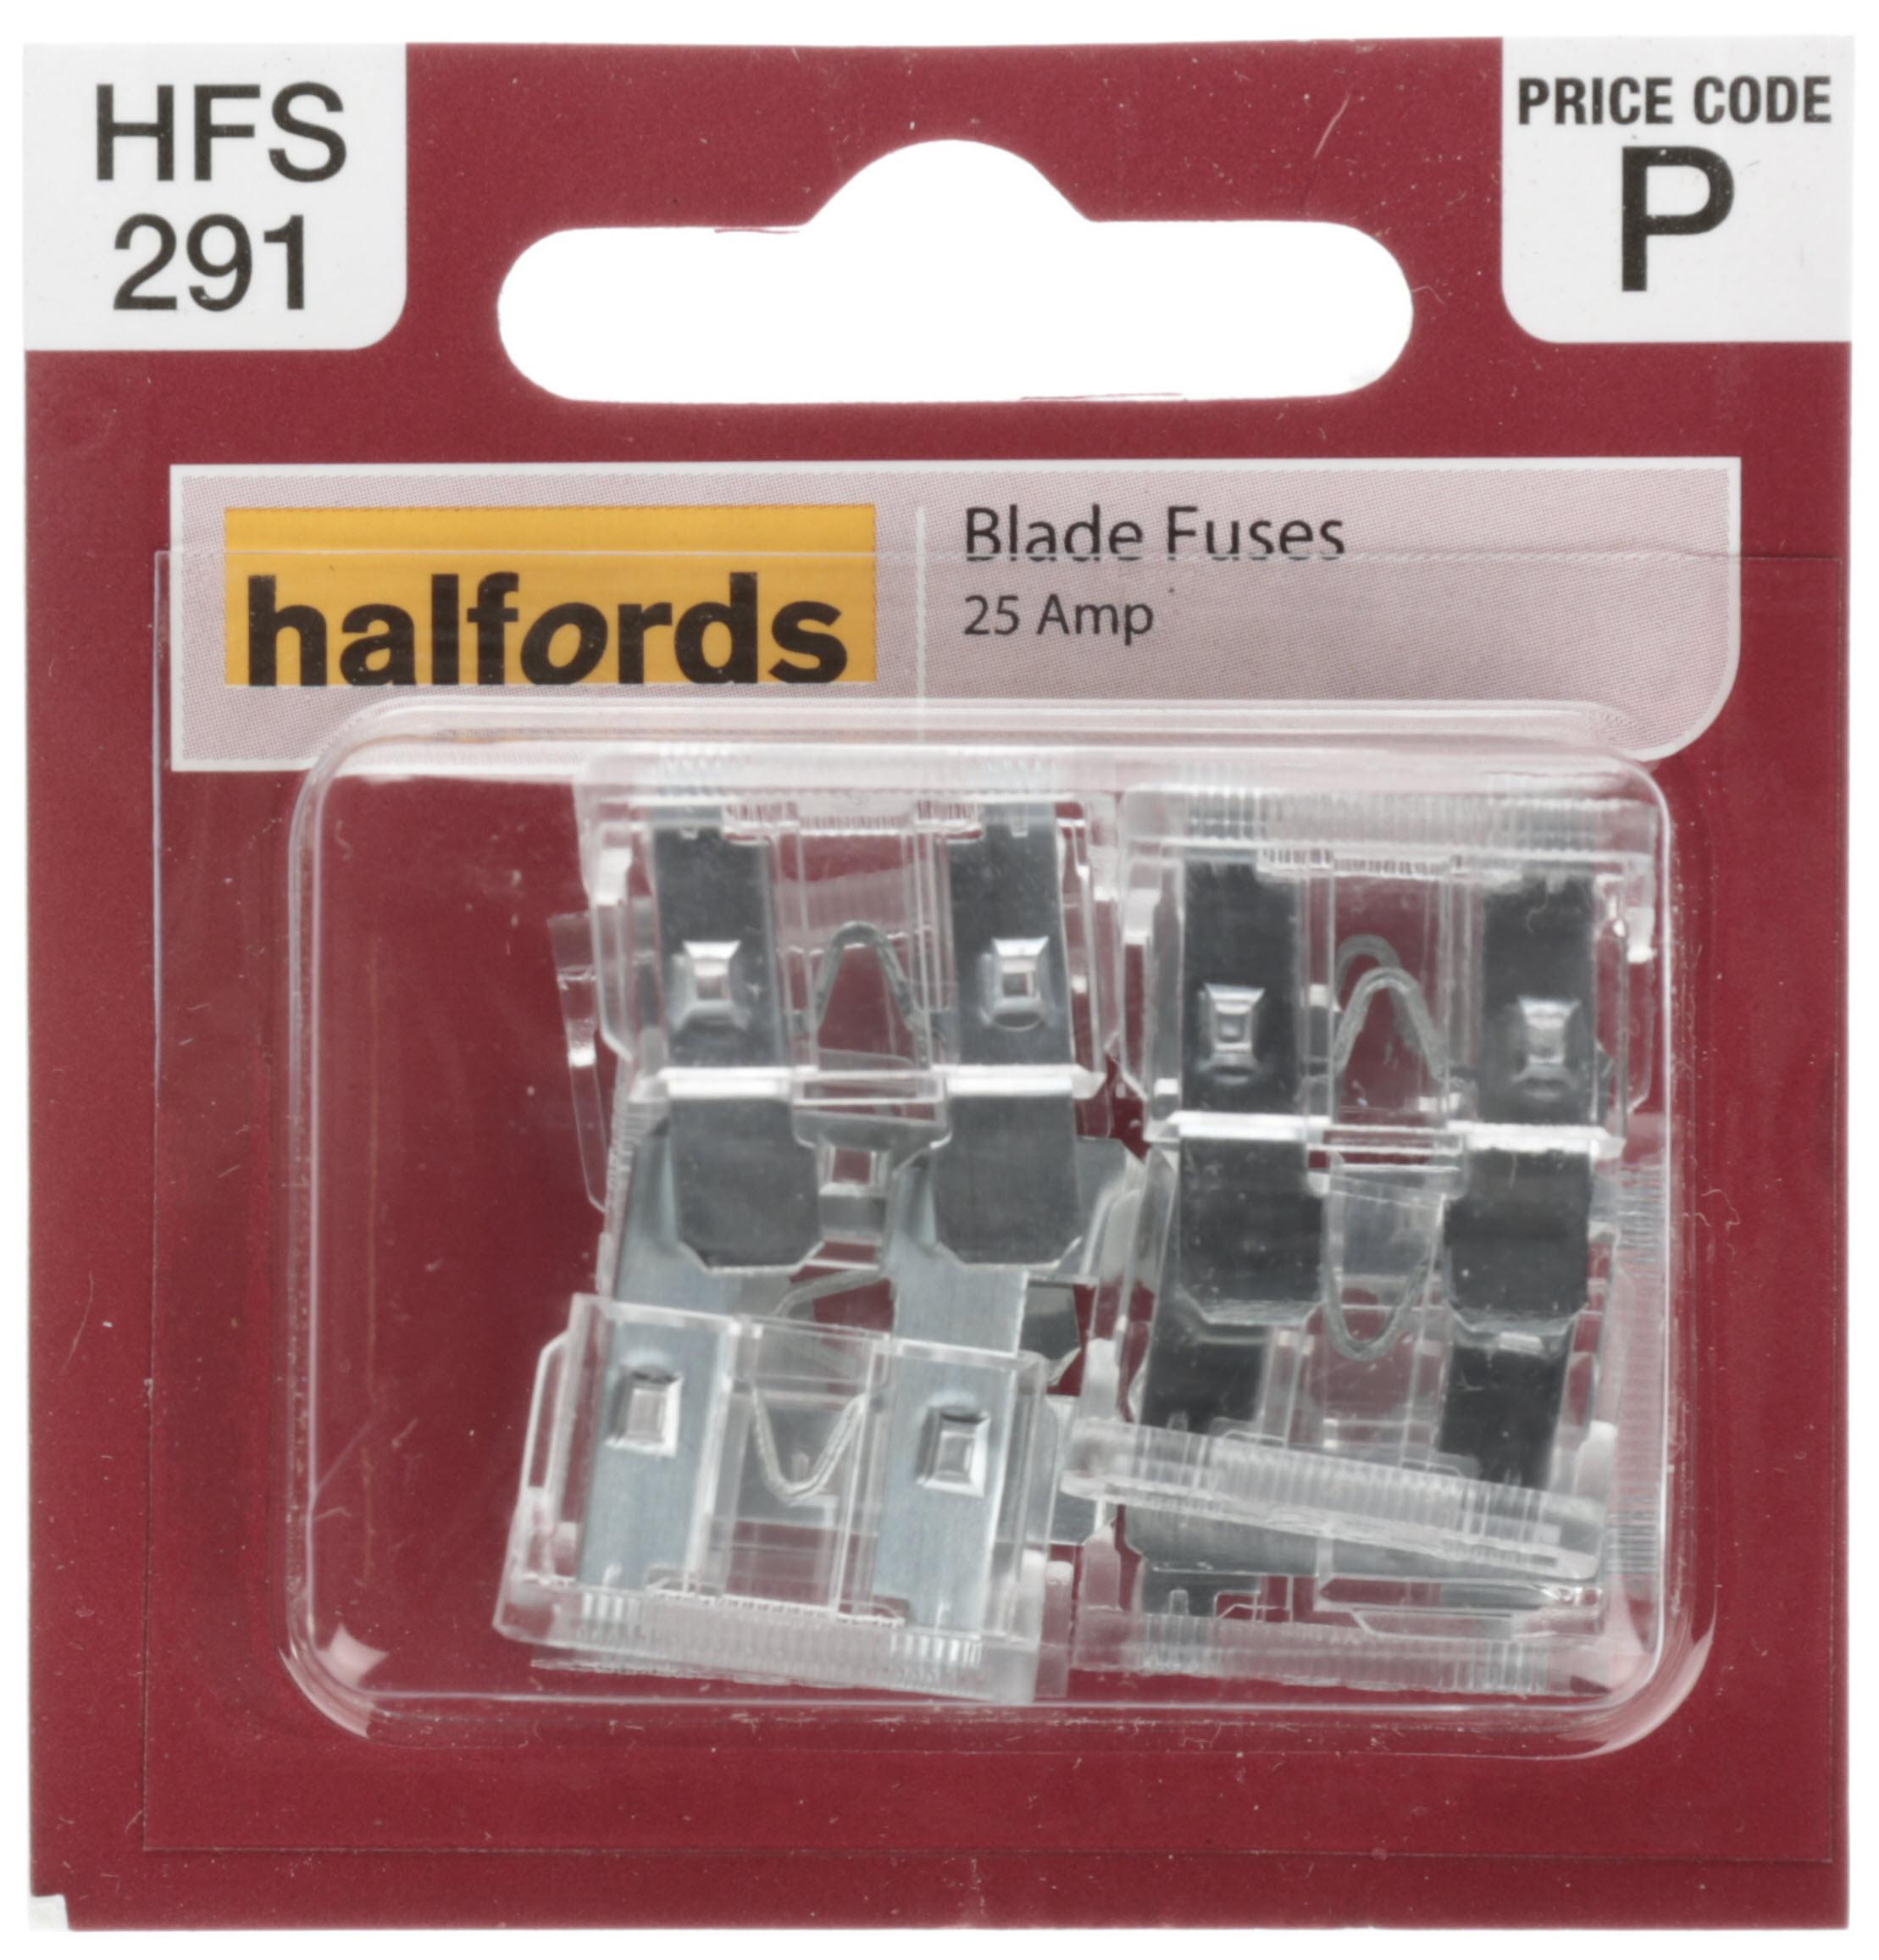 Halfords Blade Fuses 25 Amp (Hfs291)